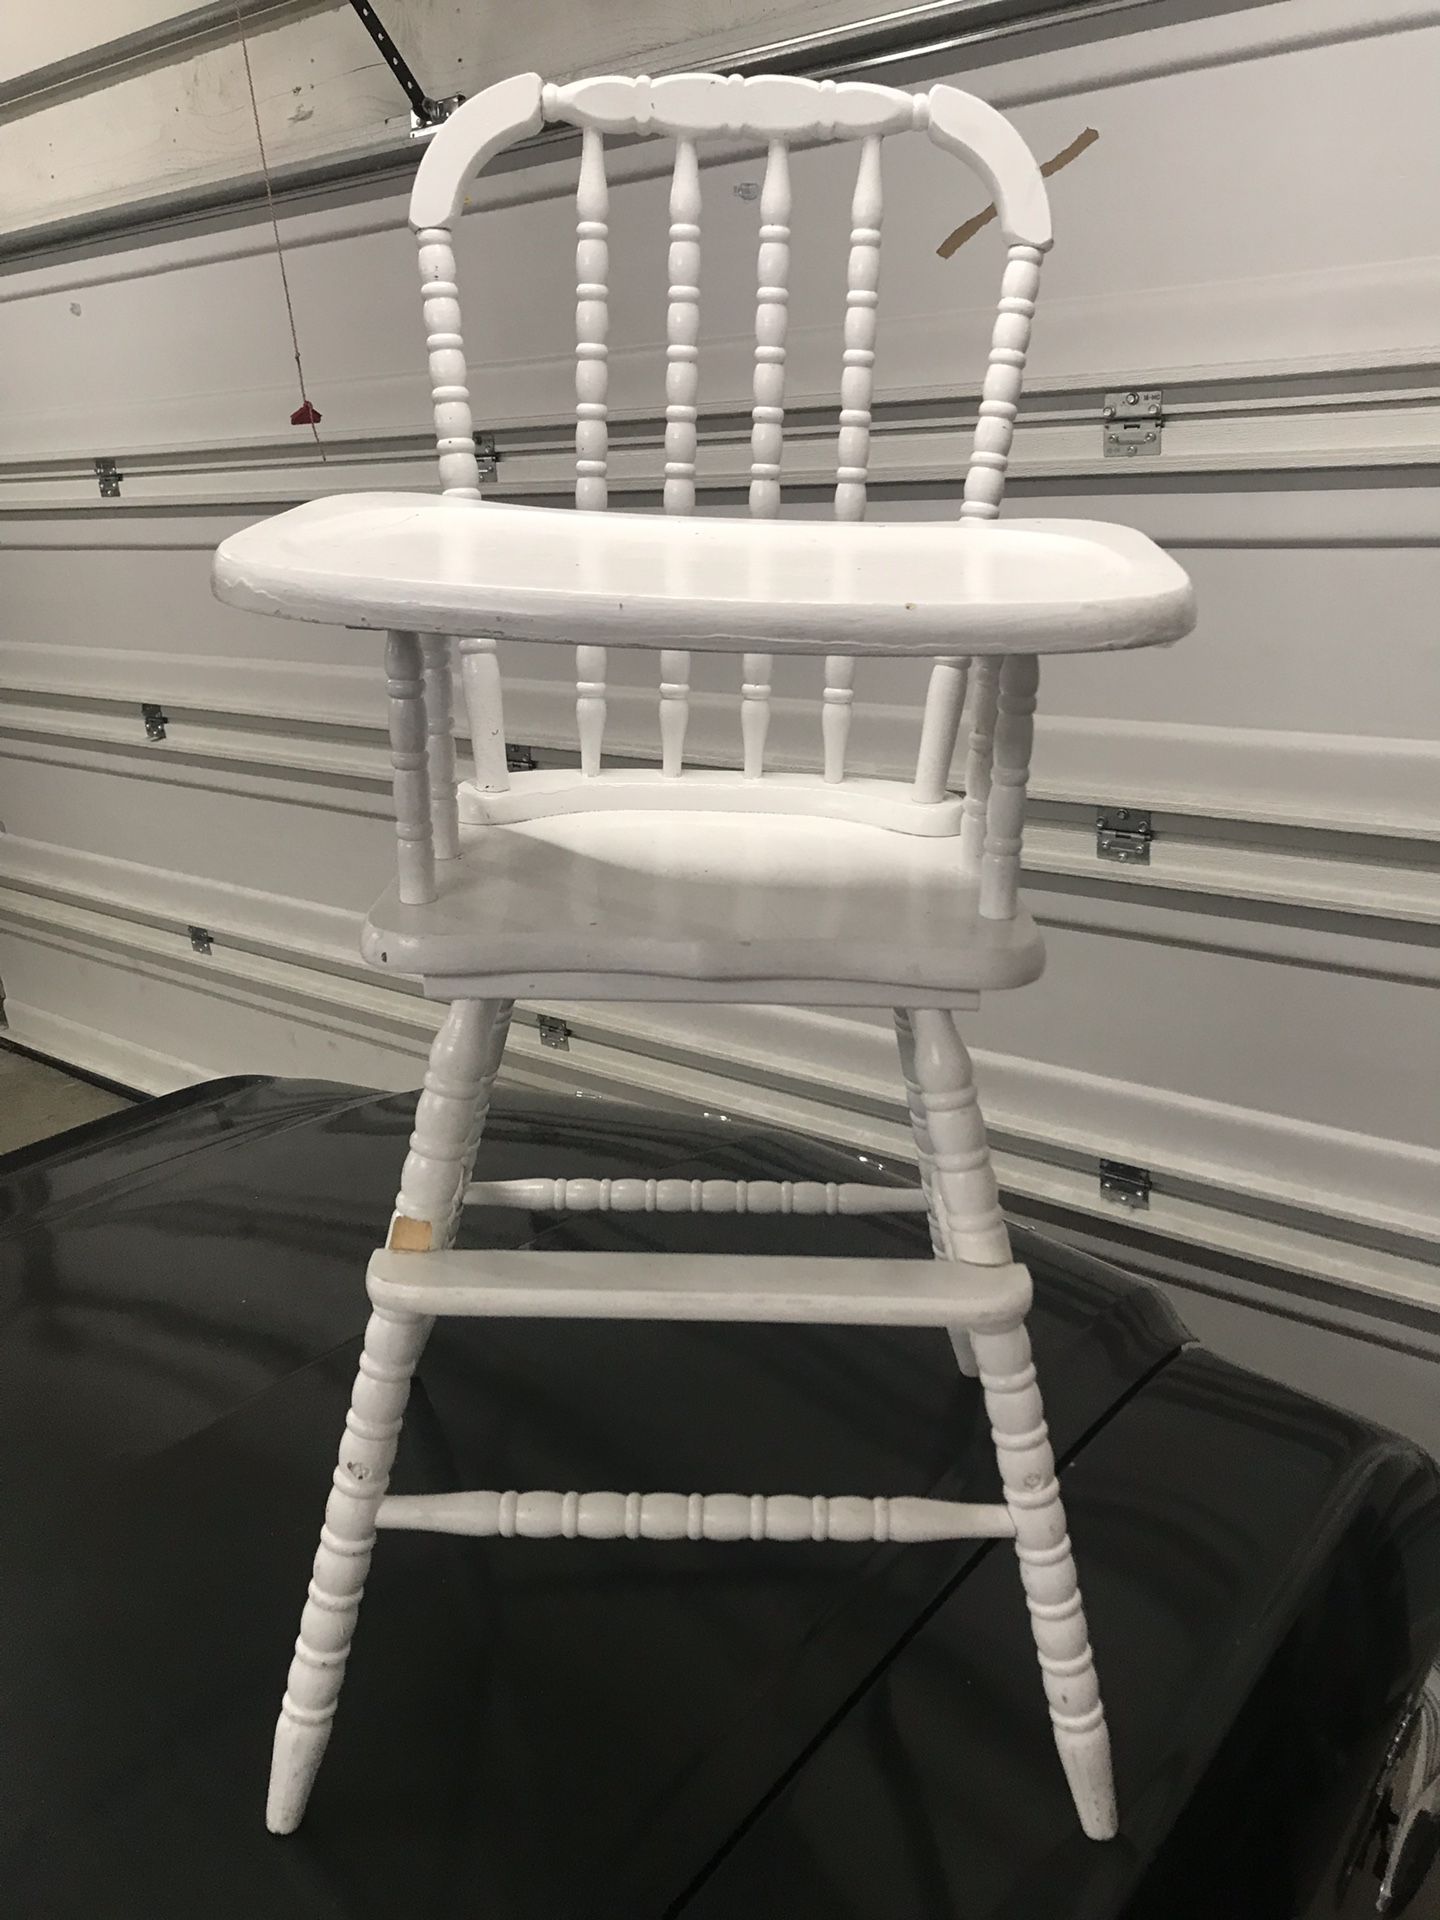 White high chair